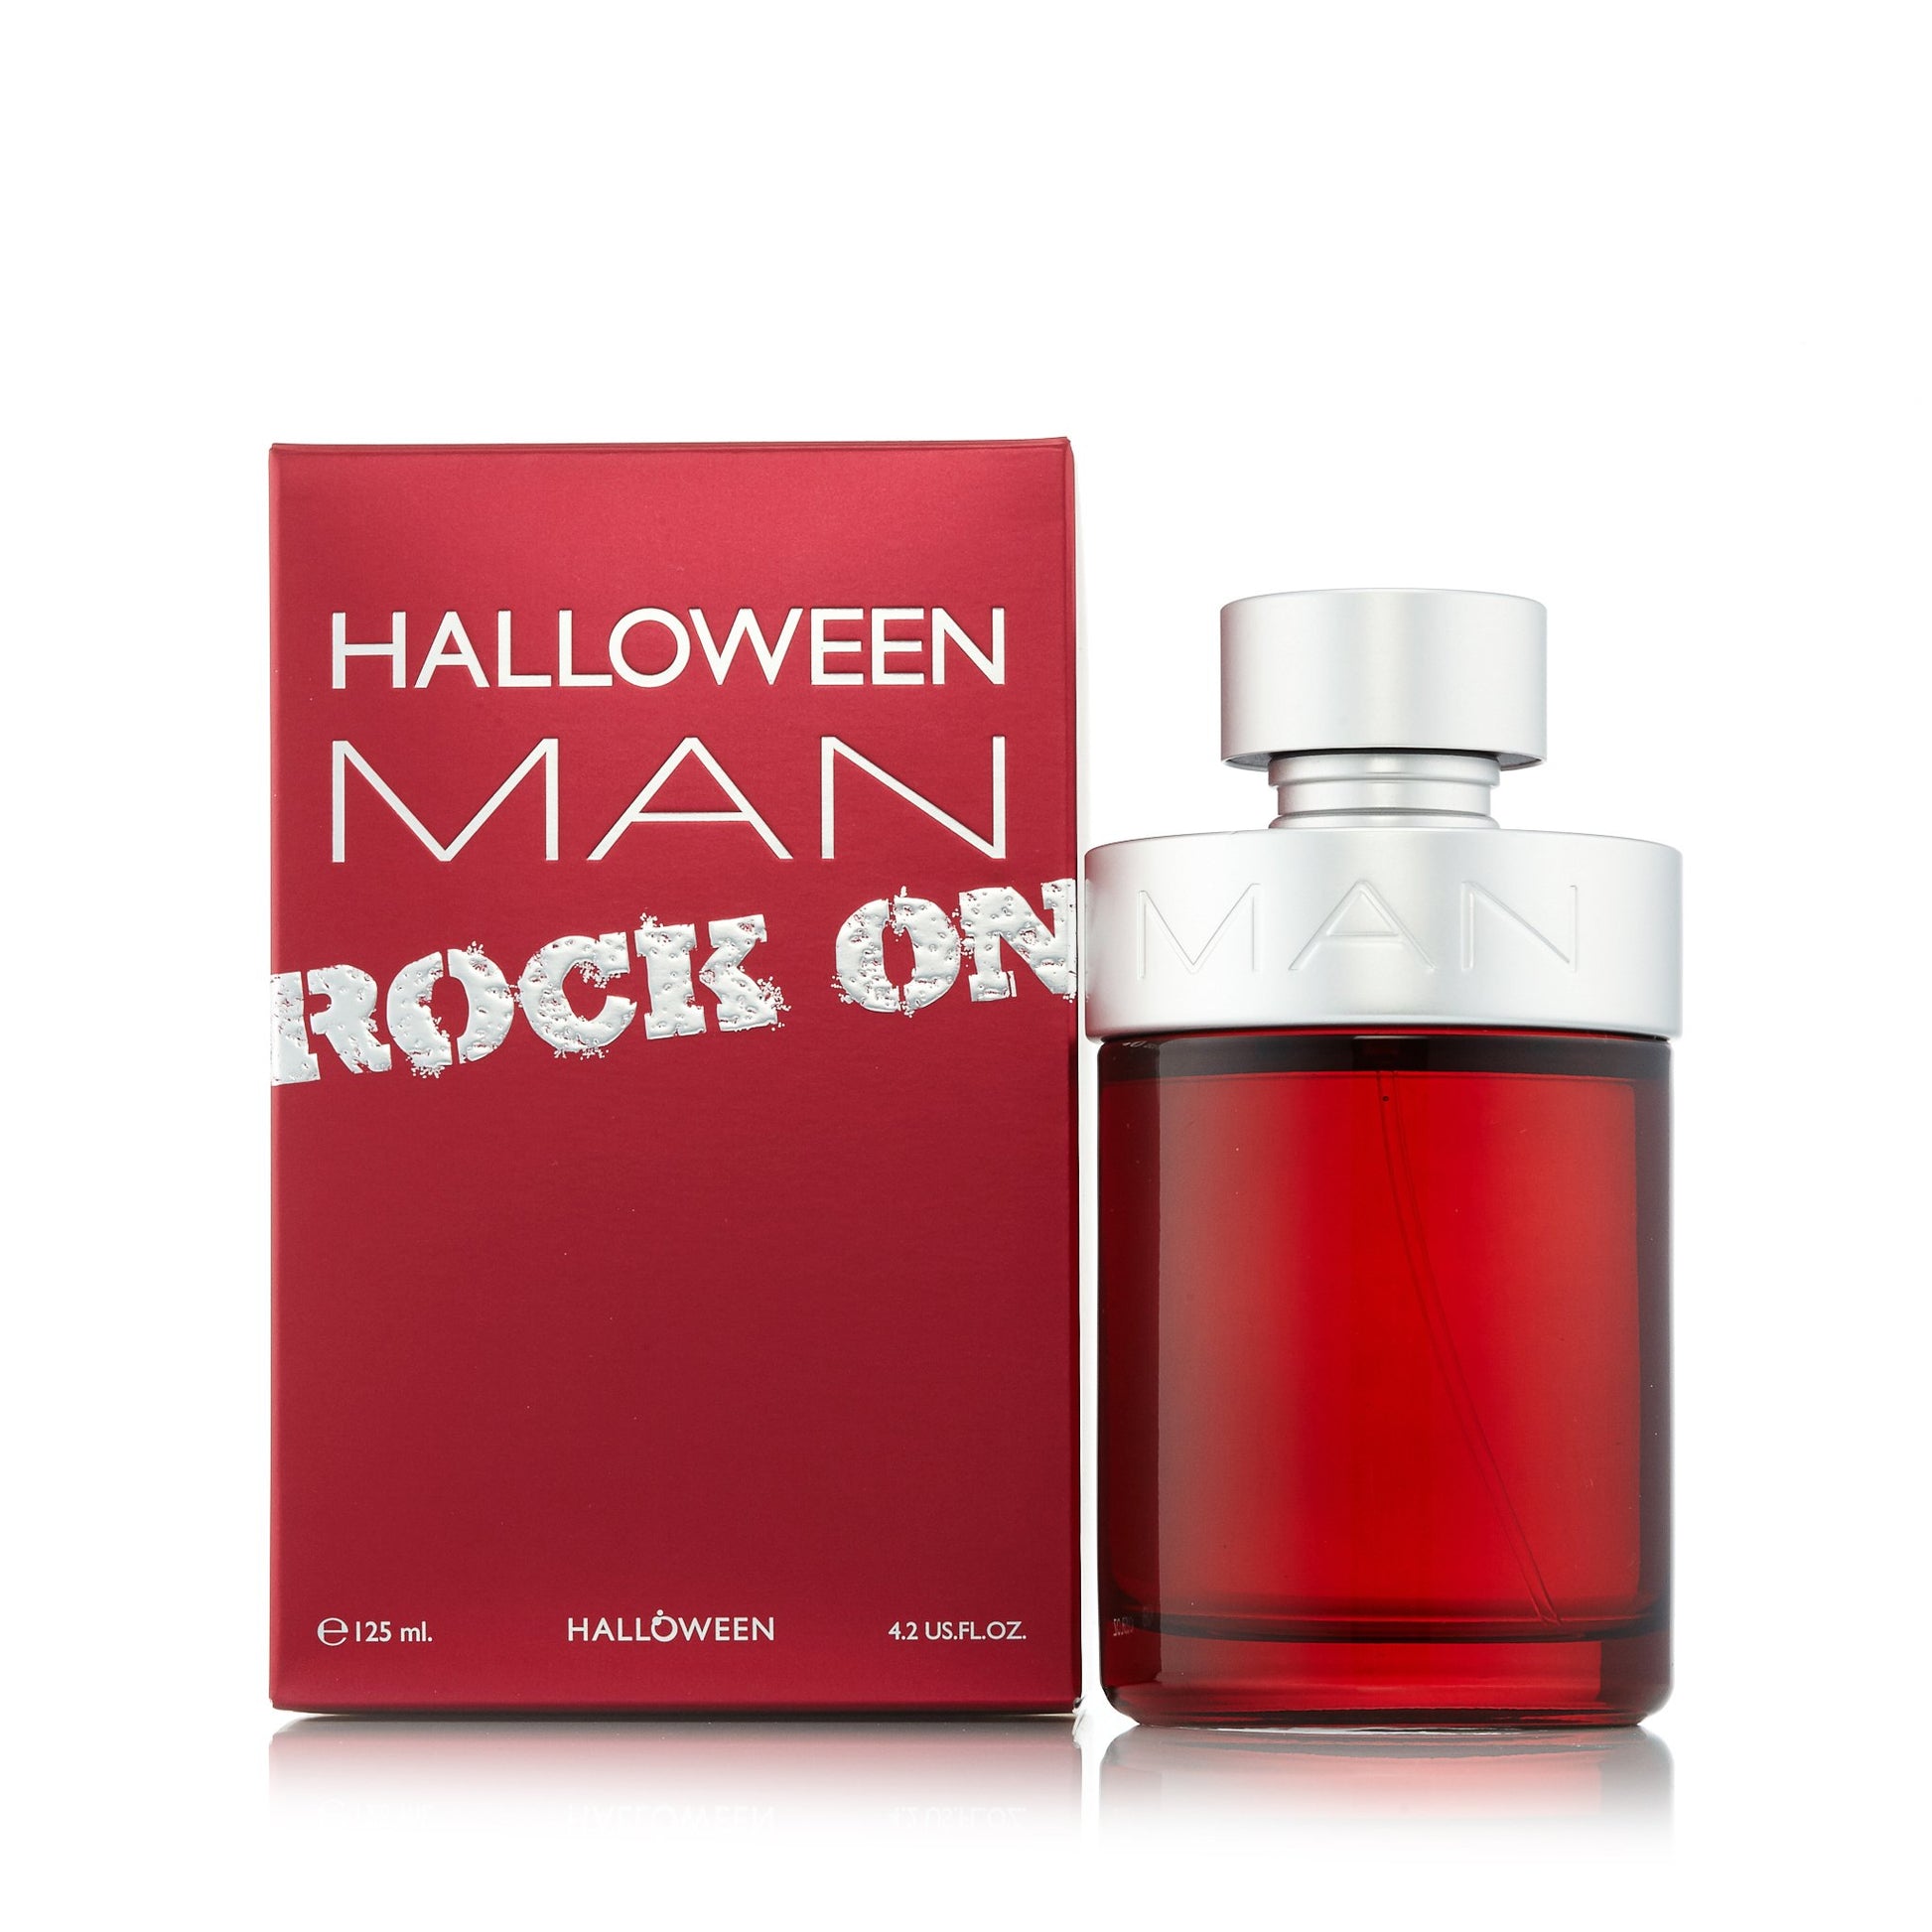 Halloween Man Rock Eau de Toilette Spray for Men by Jesus Del Pozo 4.2 oz. Click to open in modal